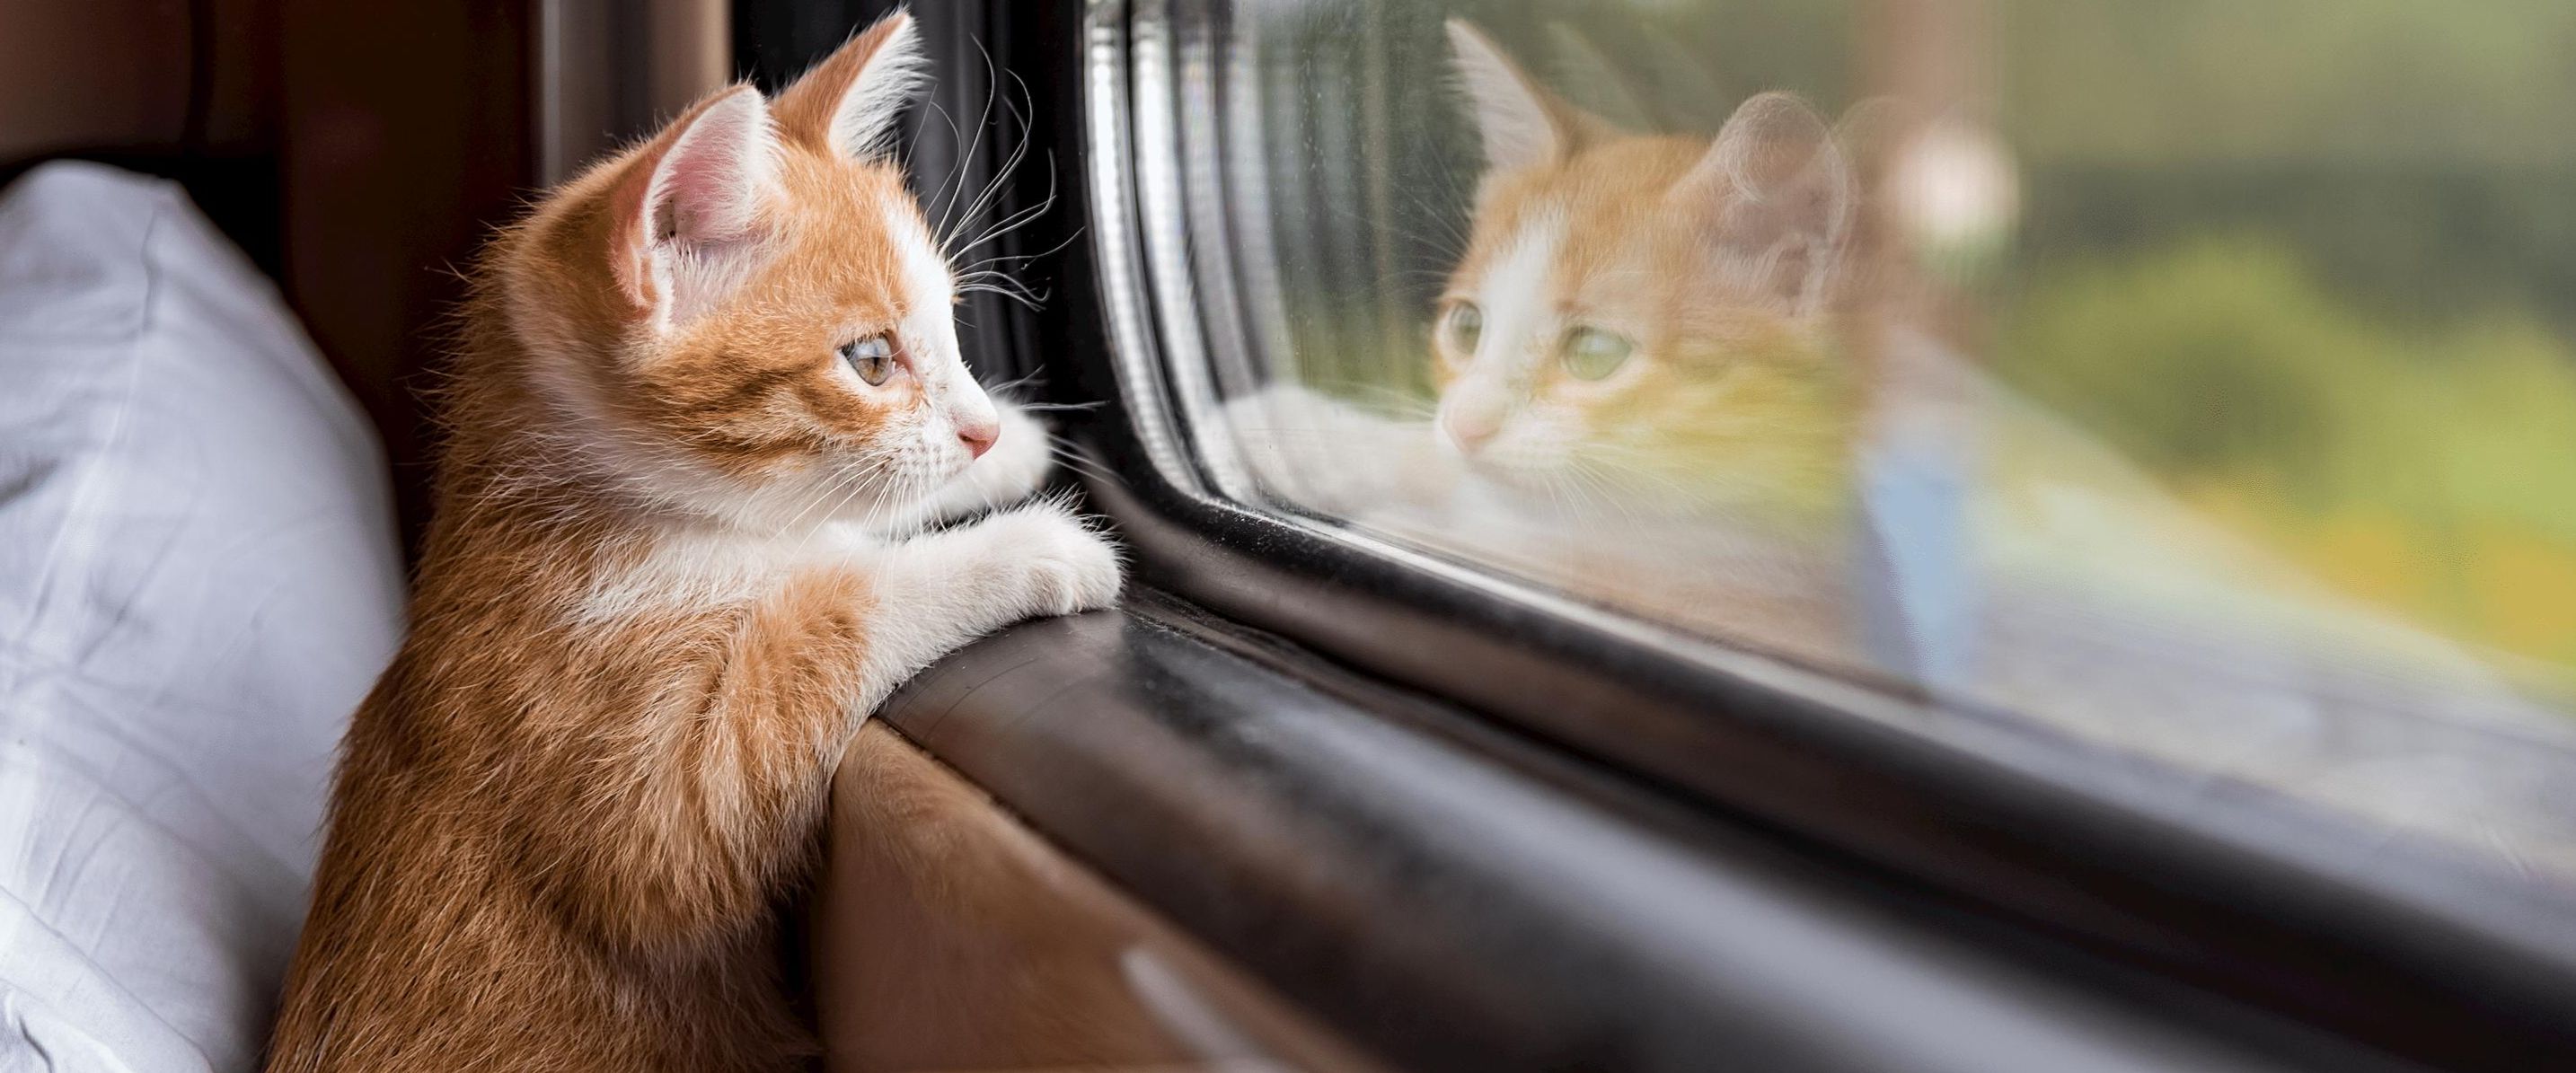 Cani e gatti in treno: regole di trasporto animali in Europa